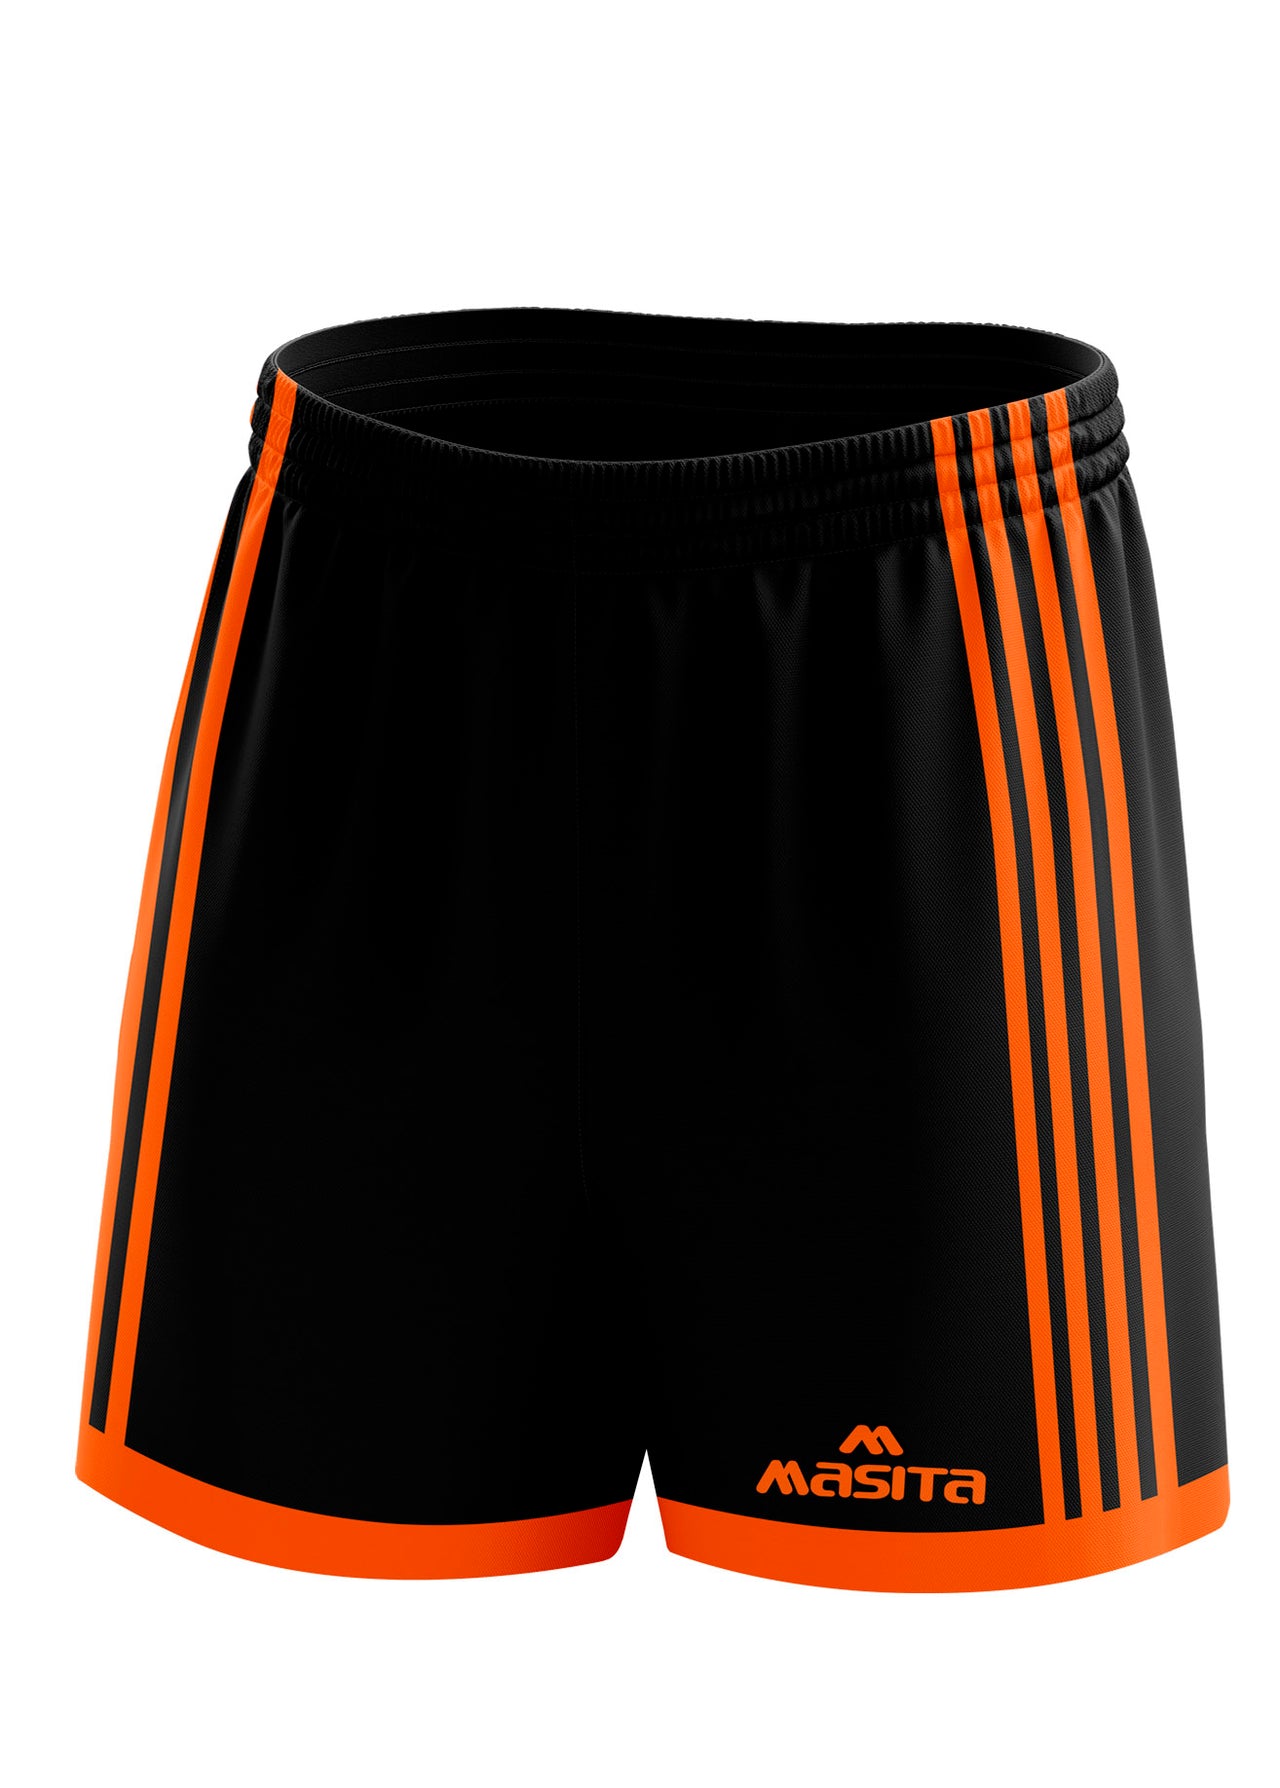 Solo Gaelic Shorts Black/Orange Adult